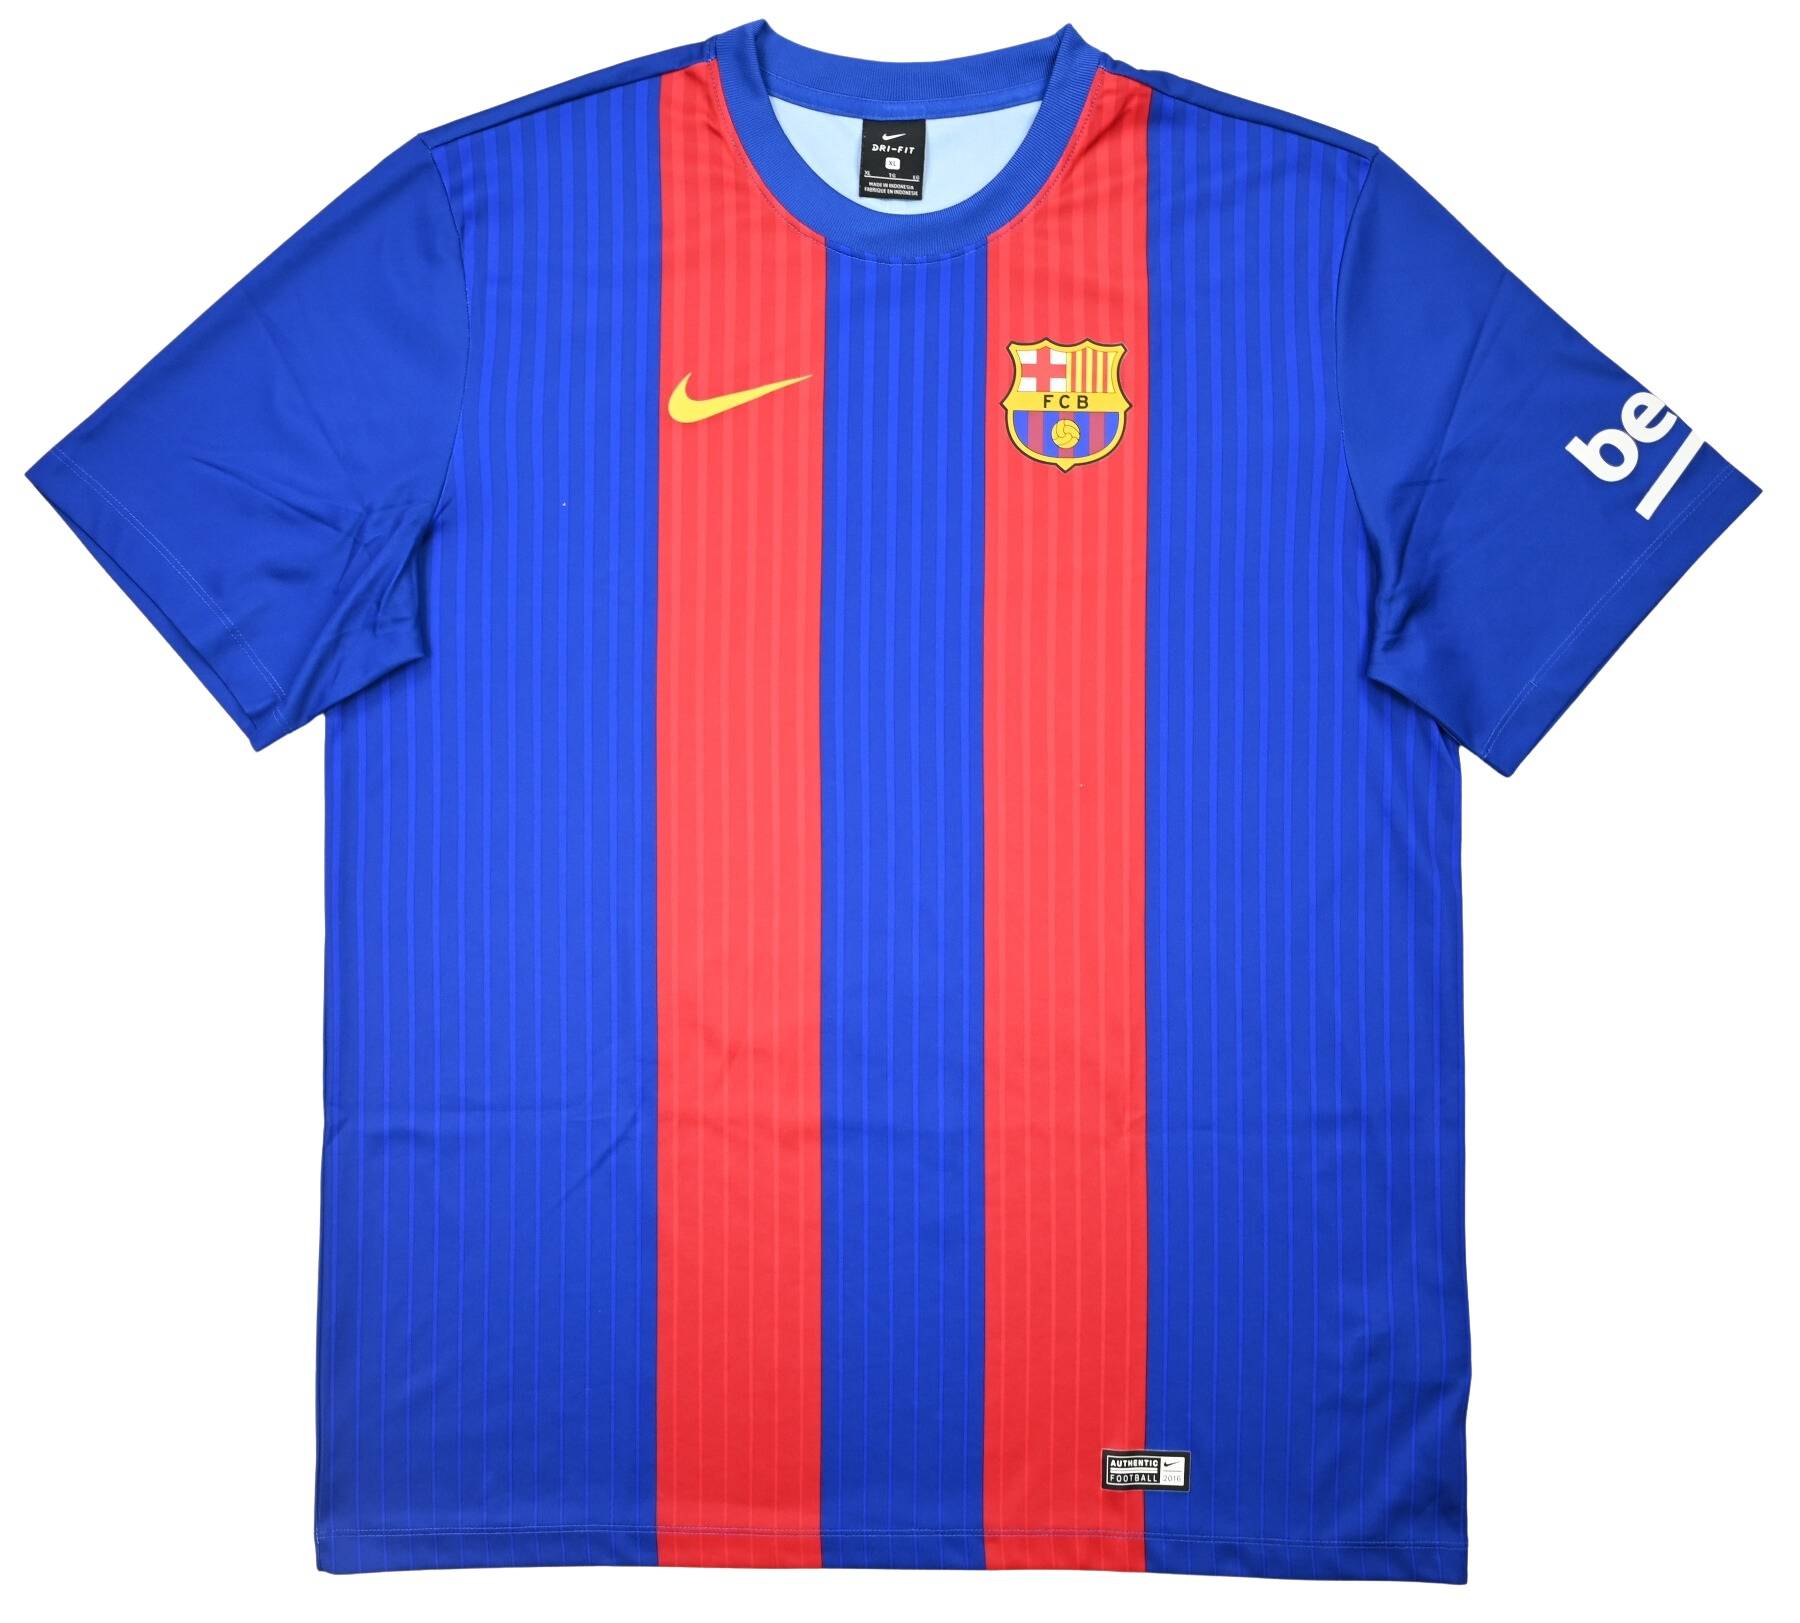 Camiseta de fútbol Nike FC Barcelona Home - 2016/17 (con patrocinador)